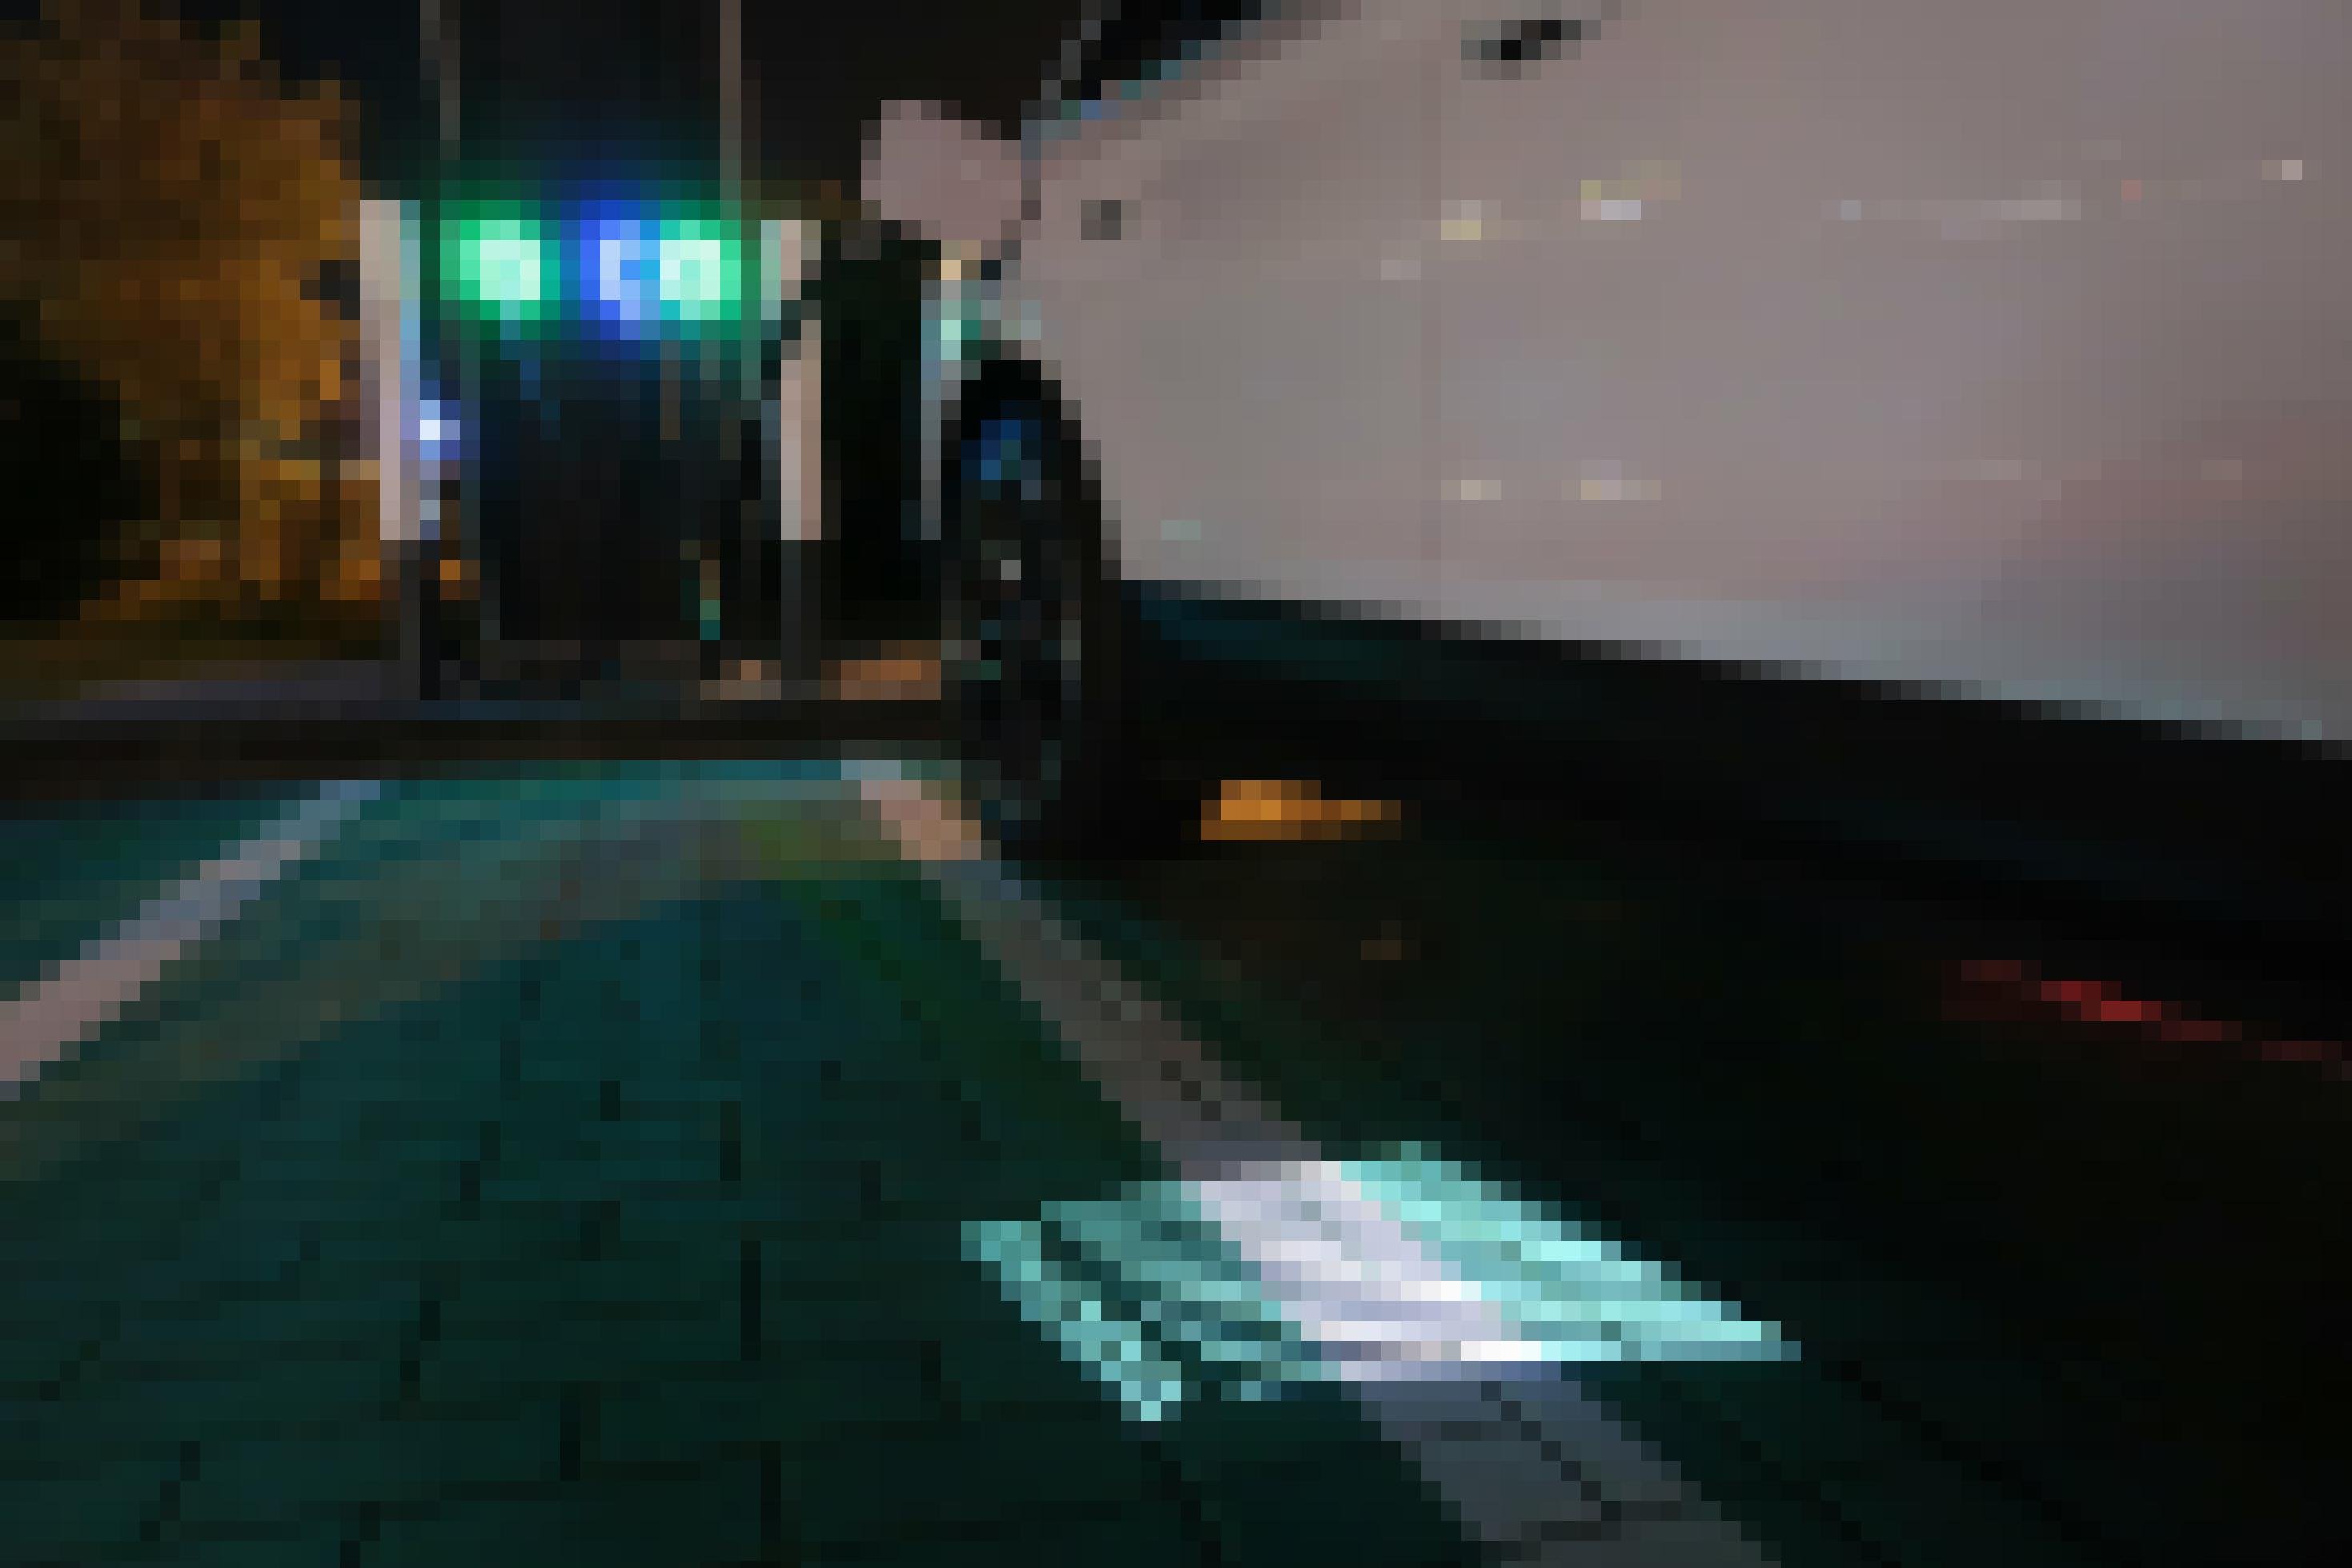 Ein Elektroauto lädt im Dunkeln strom. Auf dem Boden ist ein leuchtendes Skoda-Logo zu sehen.